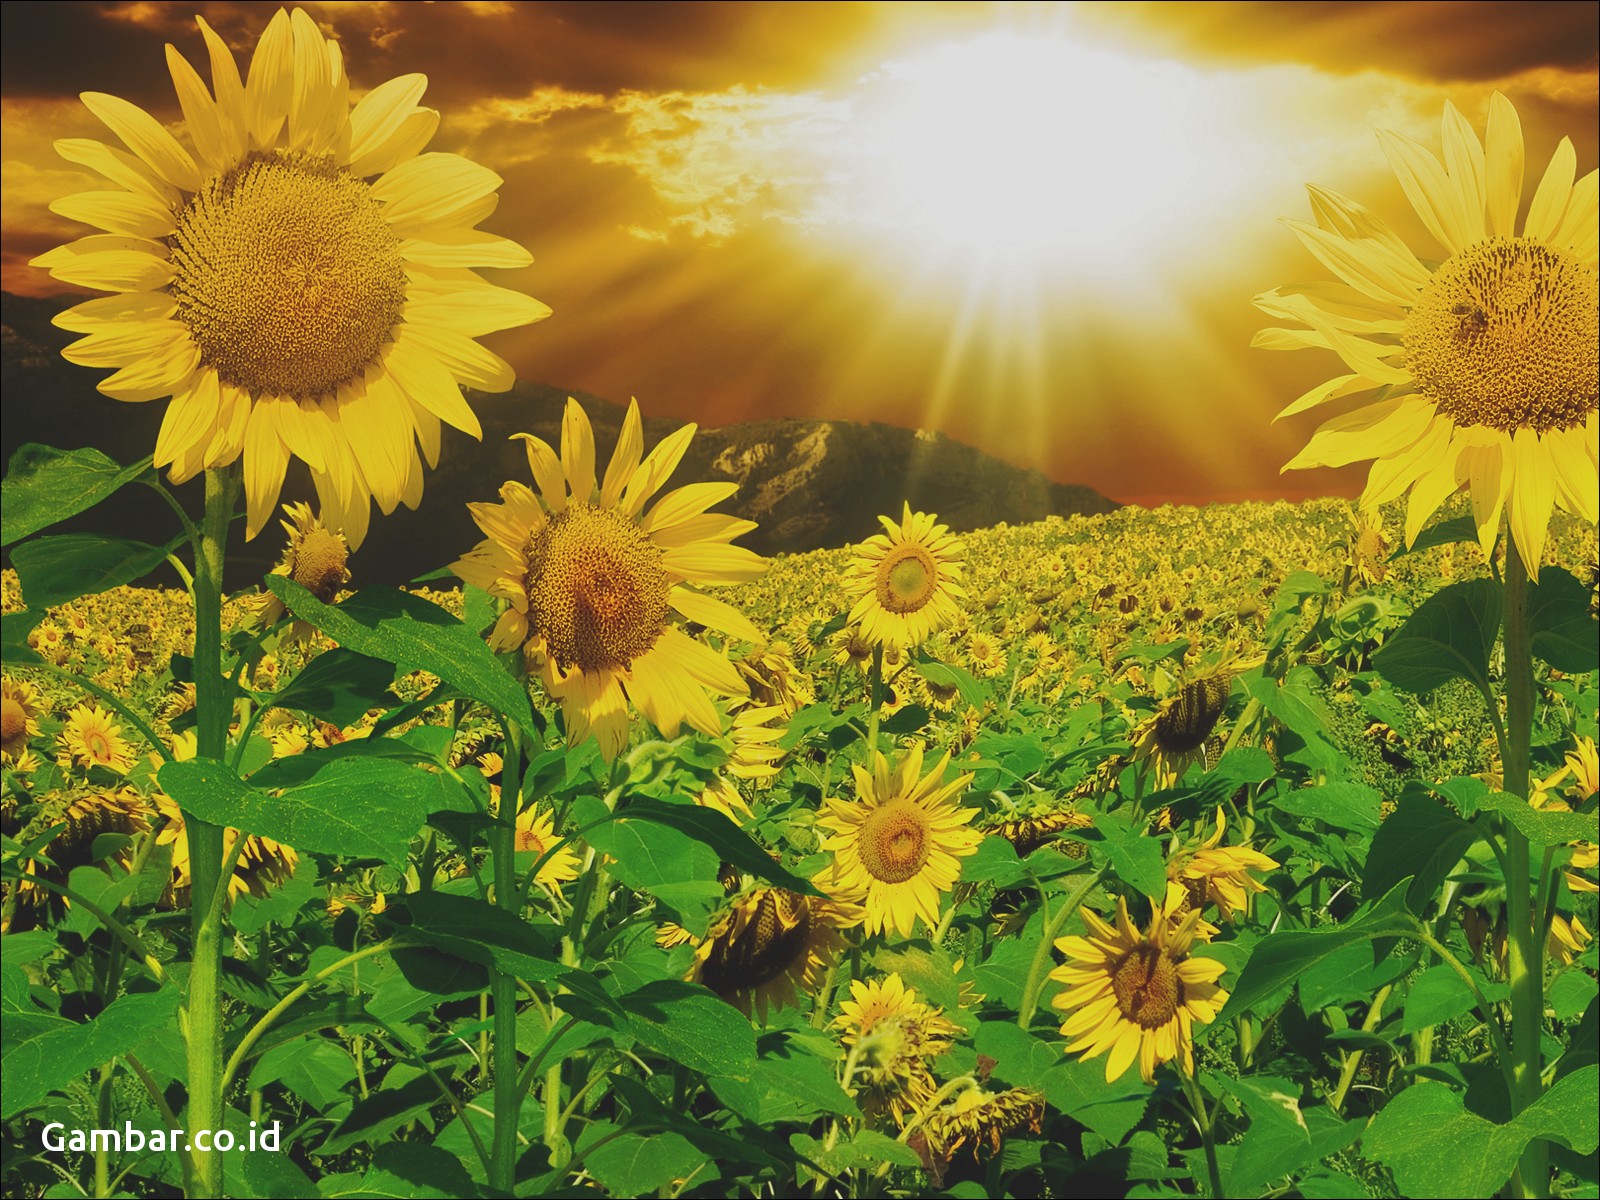 Inovasi Bunga Matahari Penghasil Listrik Dan Panas